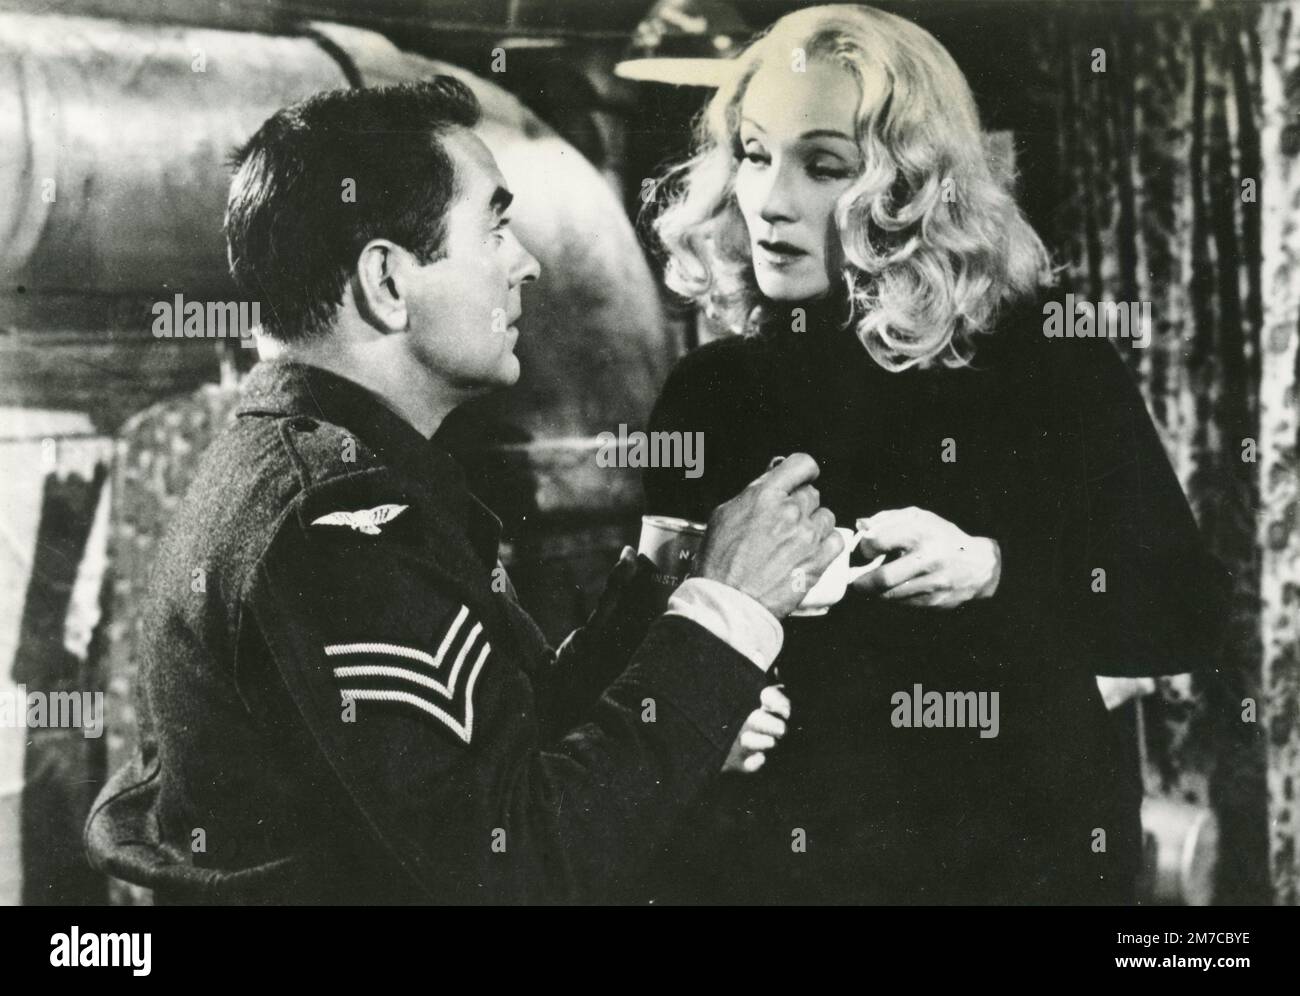 L'attrice tedesca Marlene Dietrich e l'attore americano Tyrone Power nel film testimone per l'accusa, USA 1957 Foto Stock